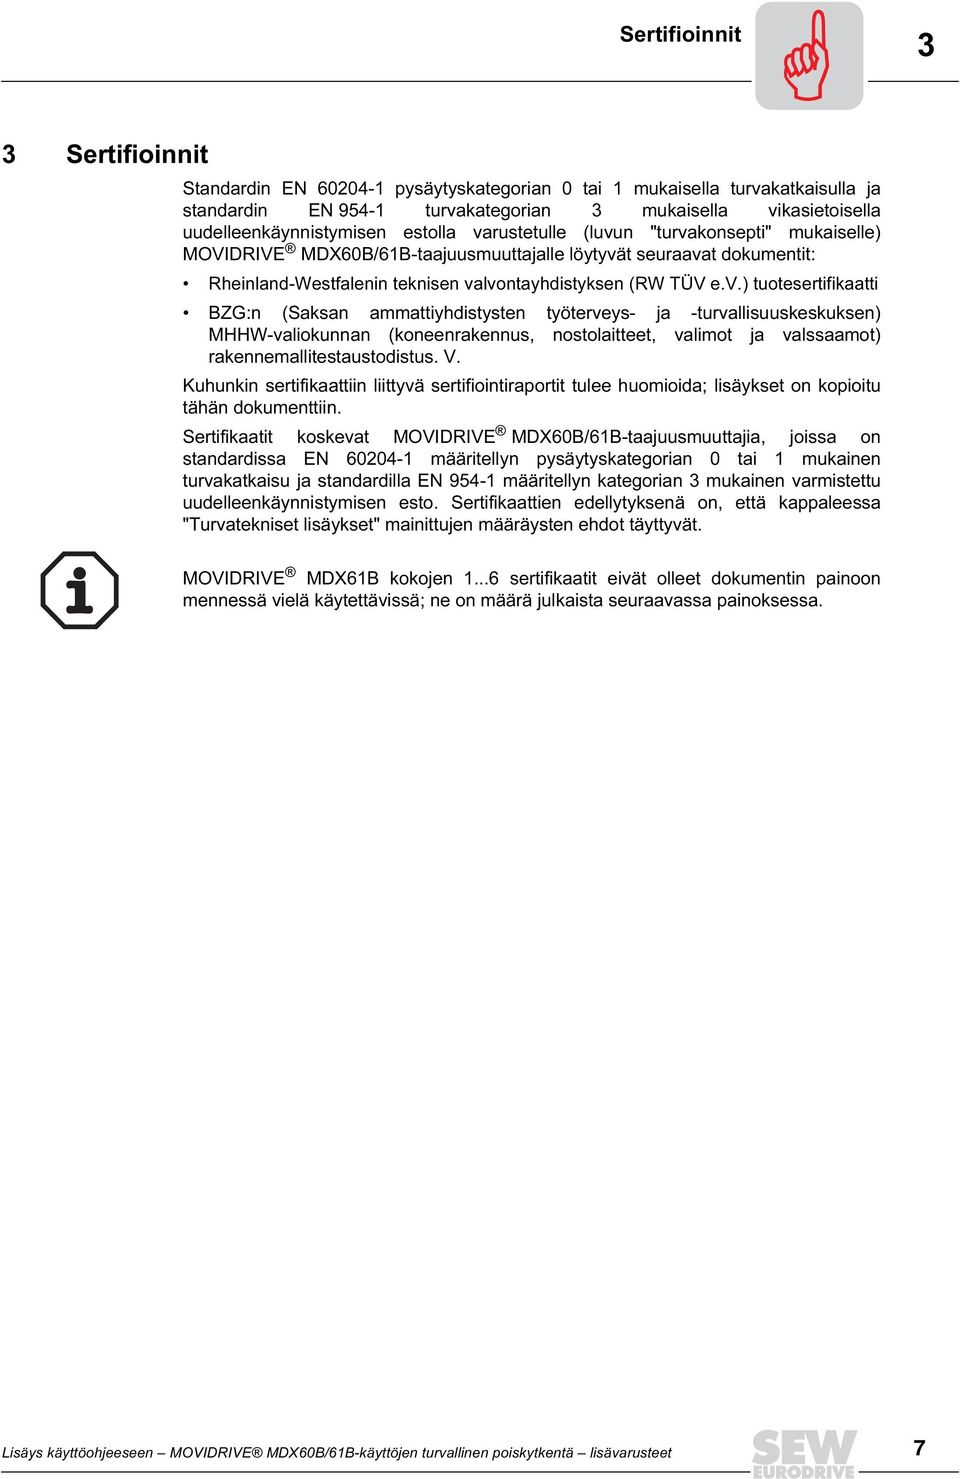 valvontayhdistyksen (RW TÜV e.v.) tuotesertifikaatti BZG:n (Saksan ammattiyhdistysten työterveys- ja -turvallisuuskeskuksen) MHHW-valiokunnan (koneenrakennus, nostolaitteet, valimot ja valssaamot) rakennemallitestaustodistus.